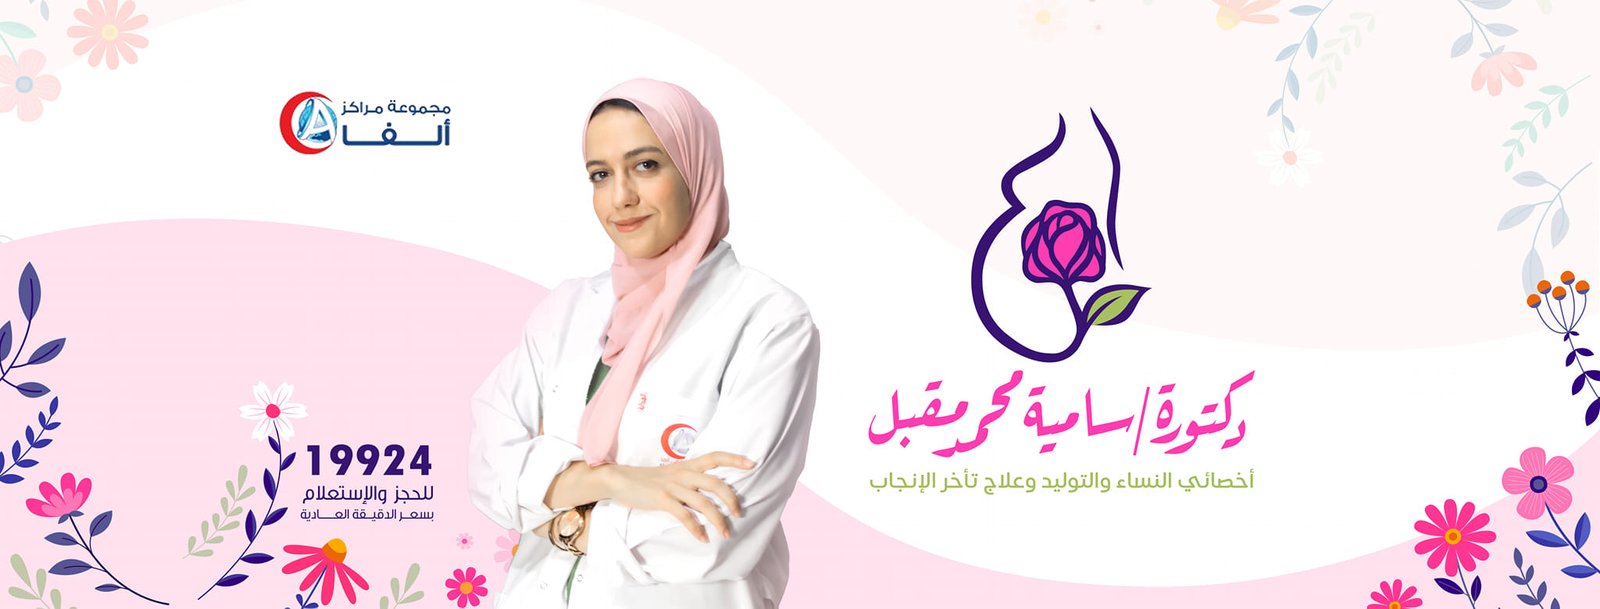 دكتورة سامية محمد مقبل Dr Samia Mohamed Mokbel 